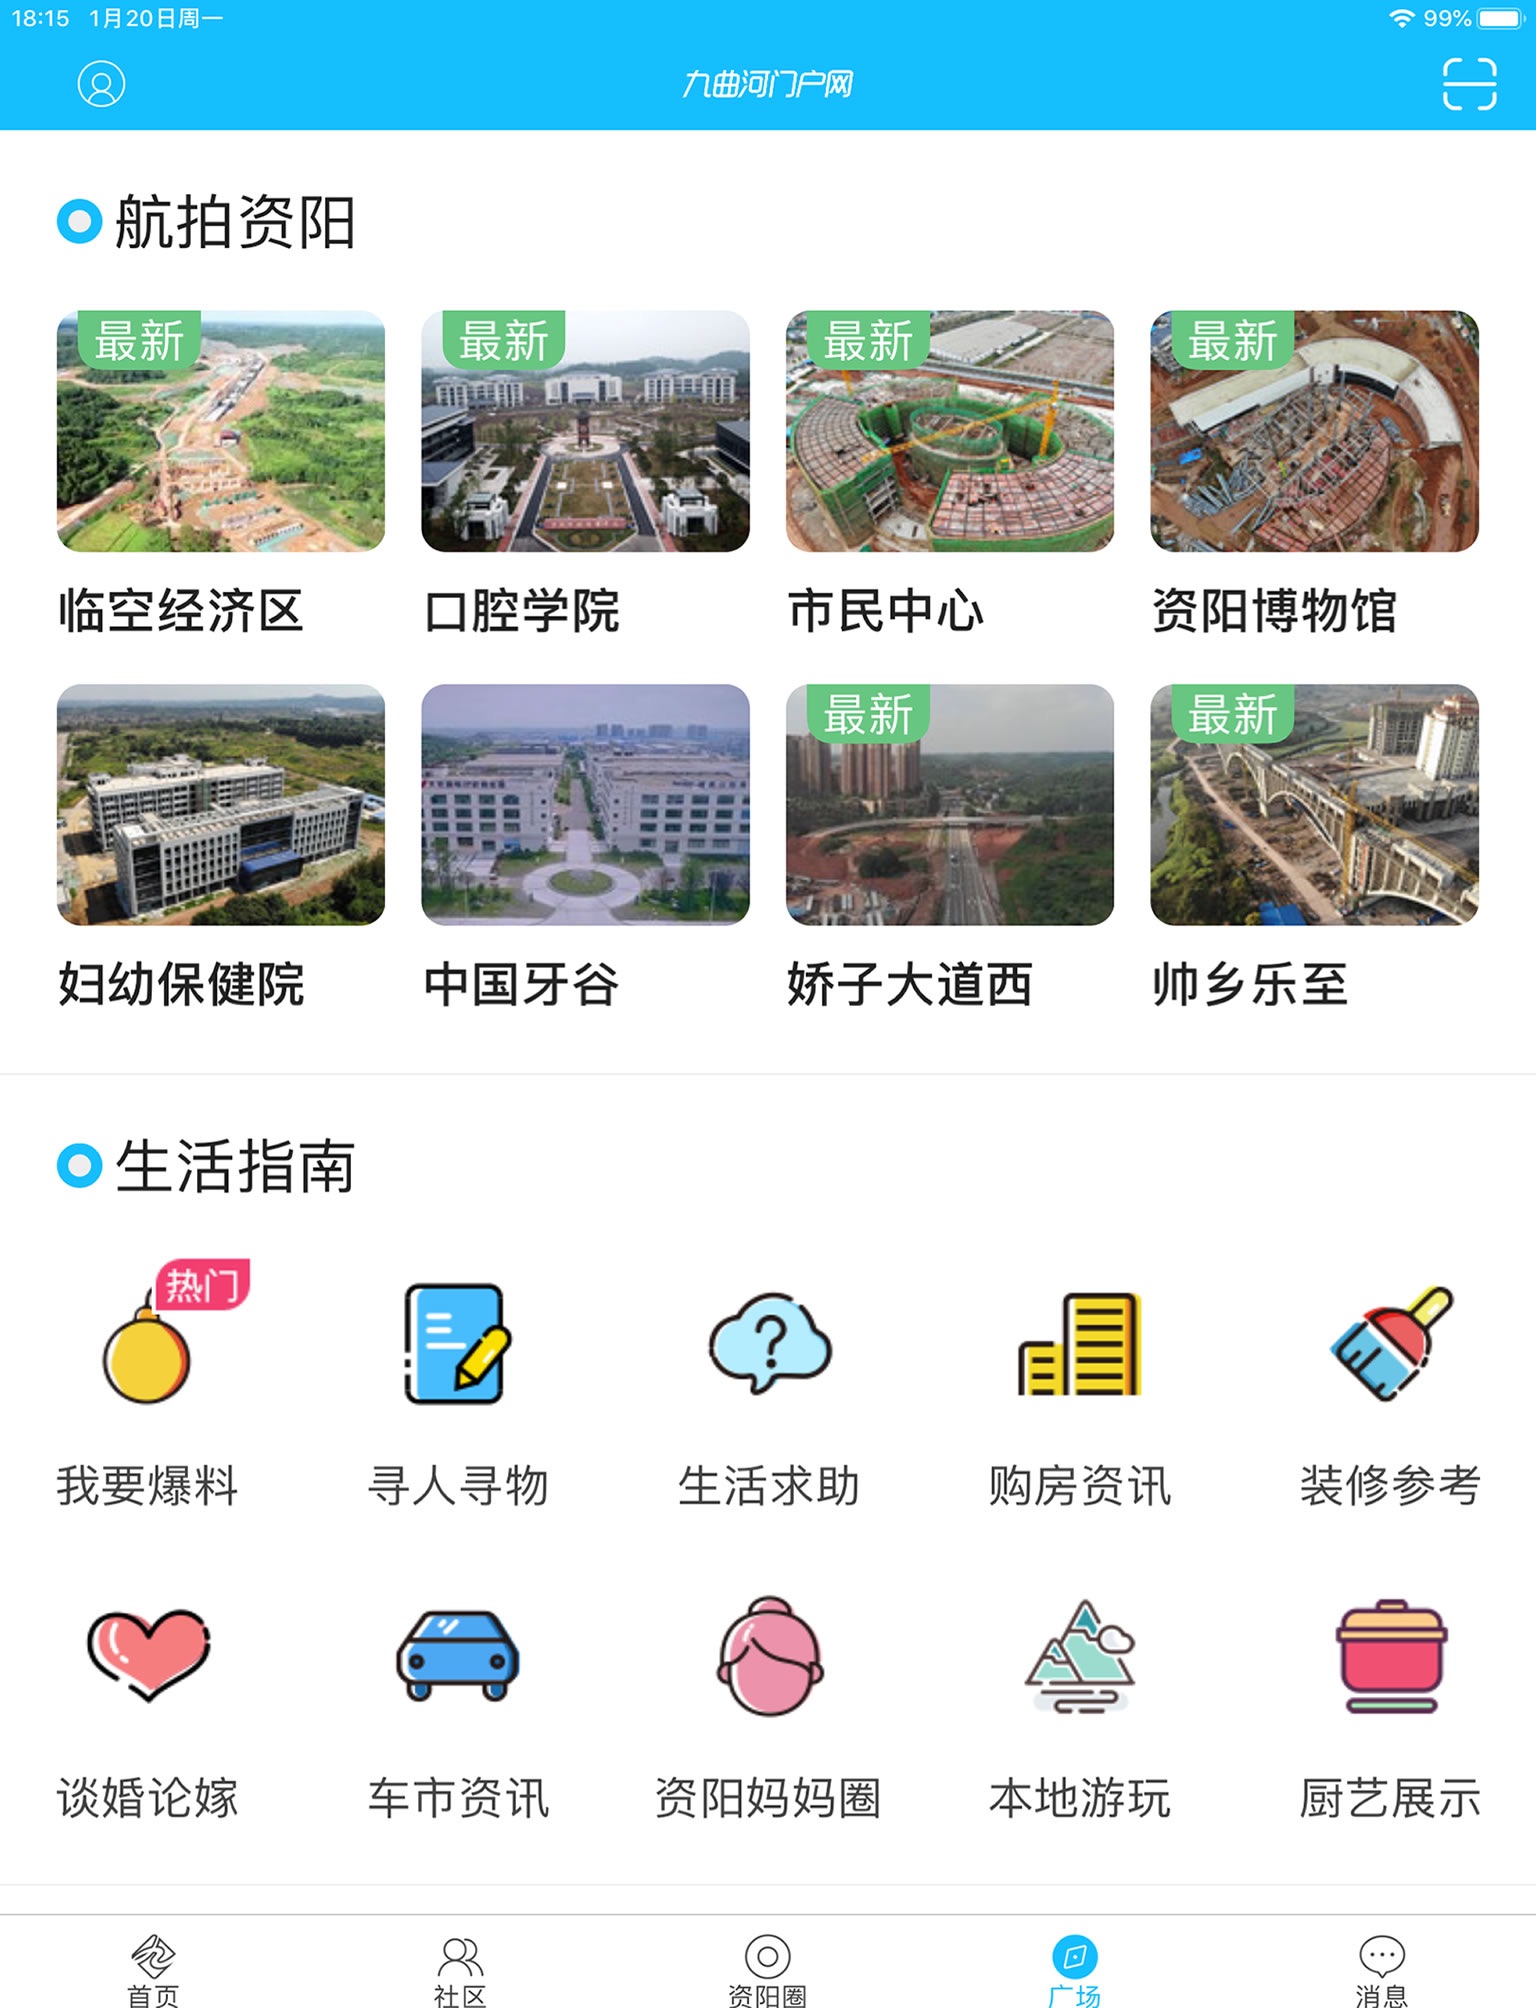 资阳九曲河门户网 - 有趣的资阳生活互动社区 screenshot 4